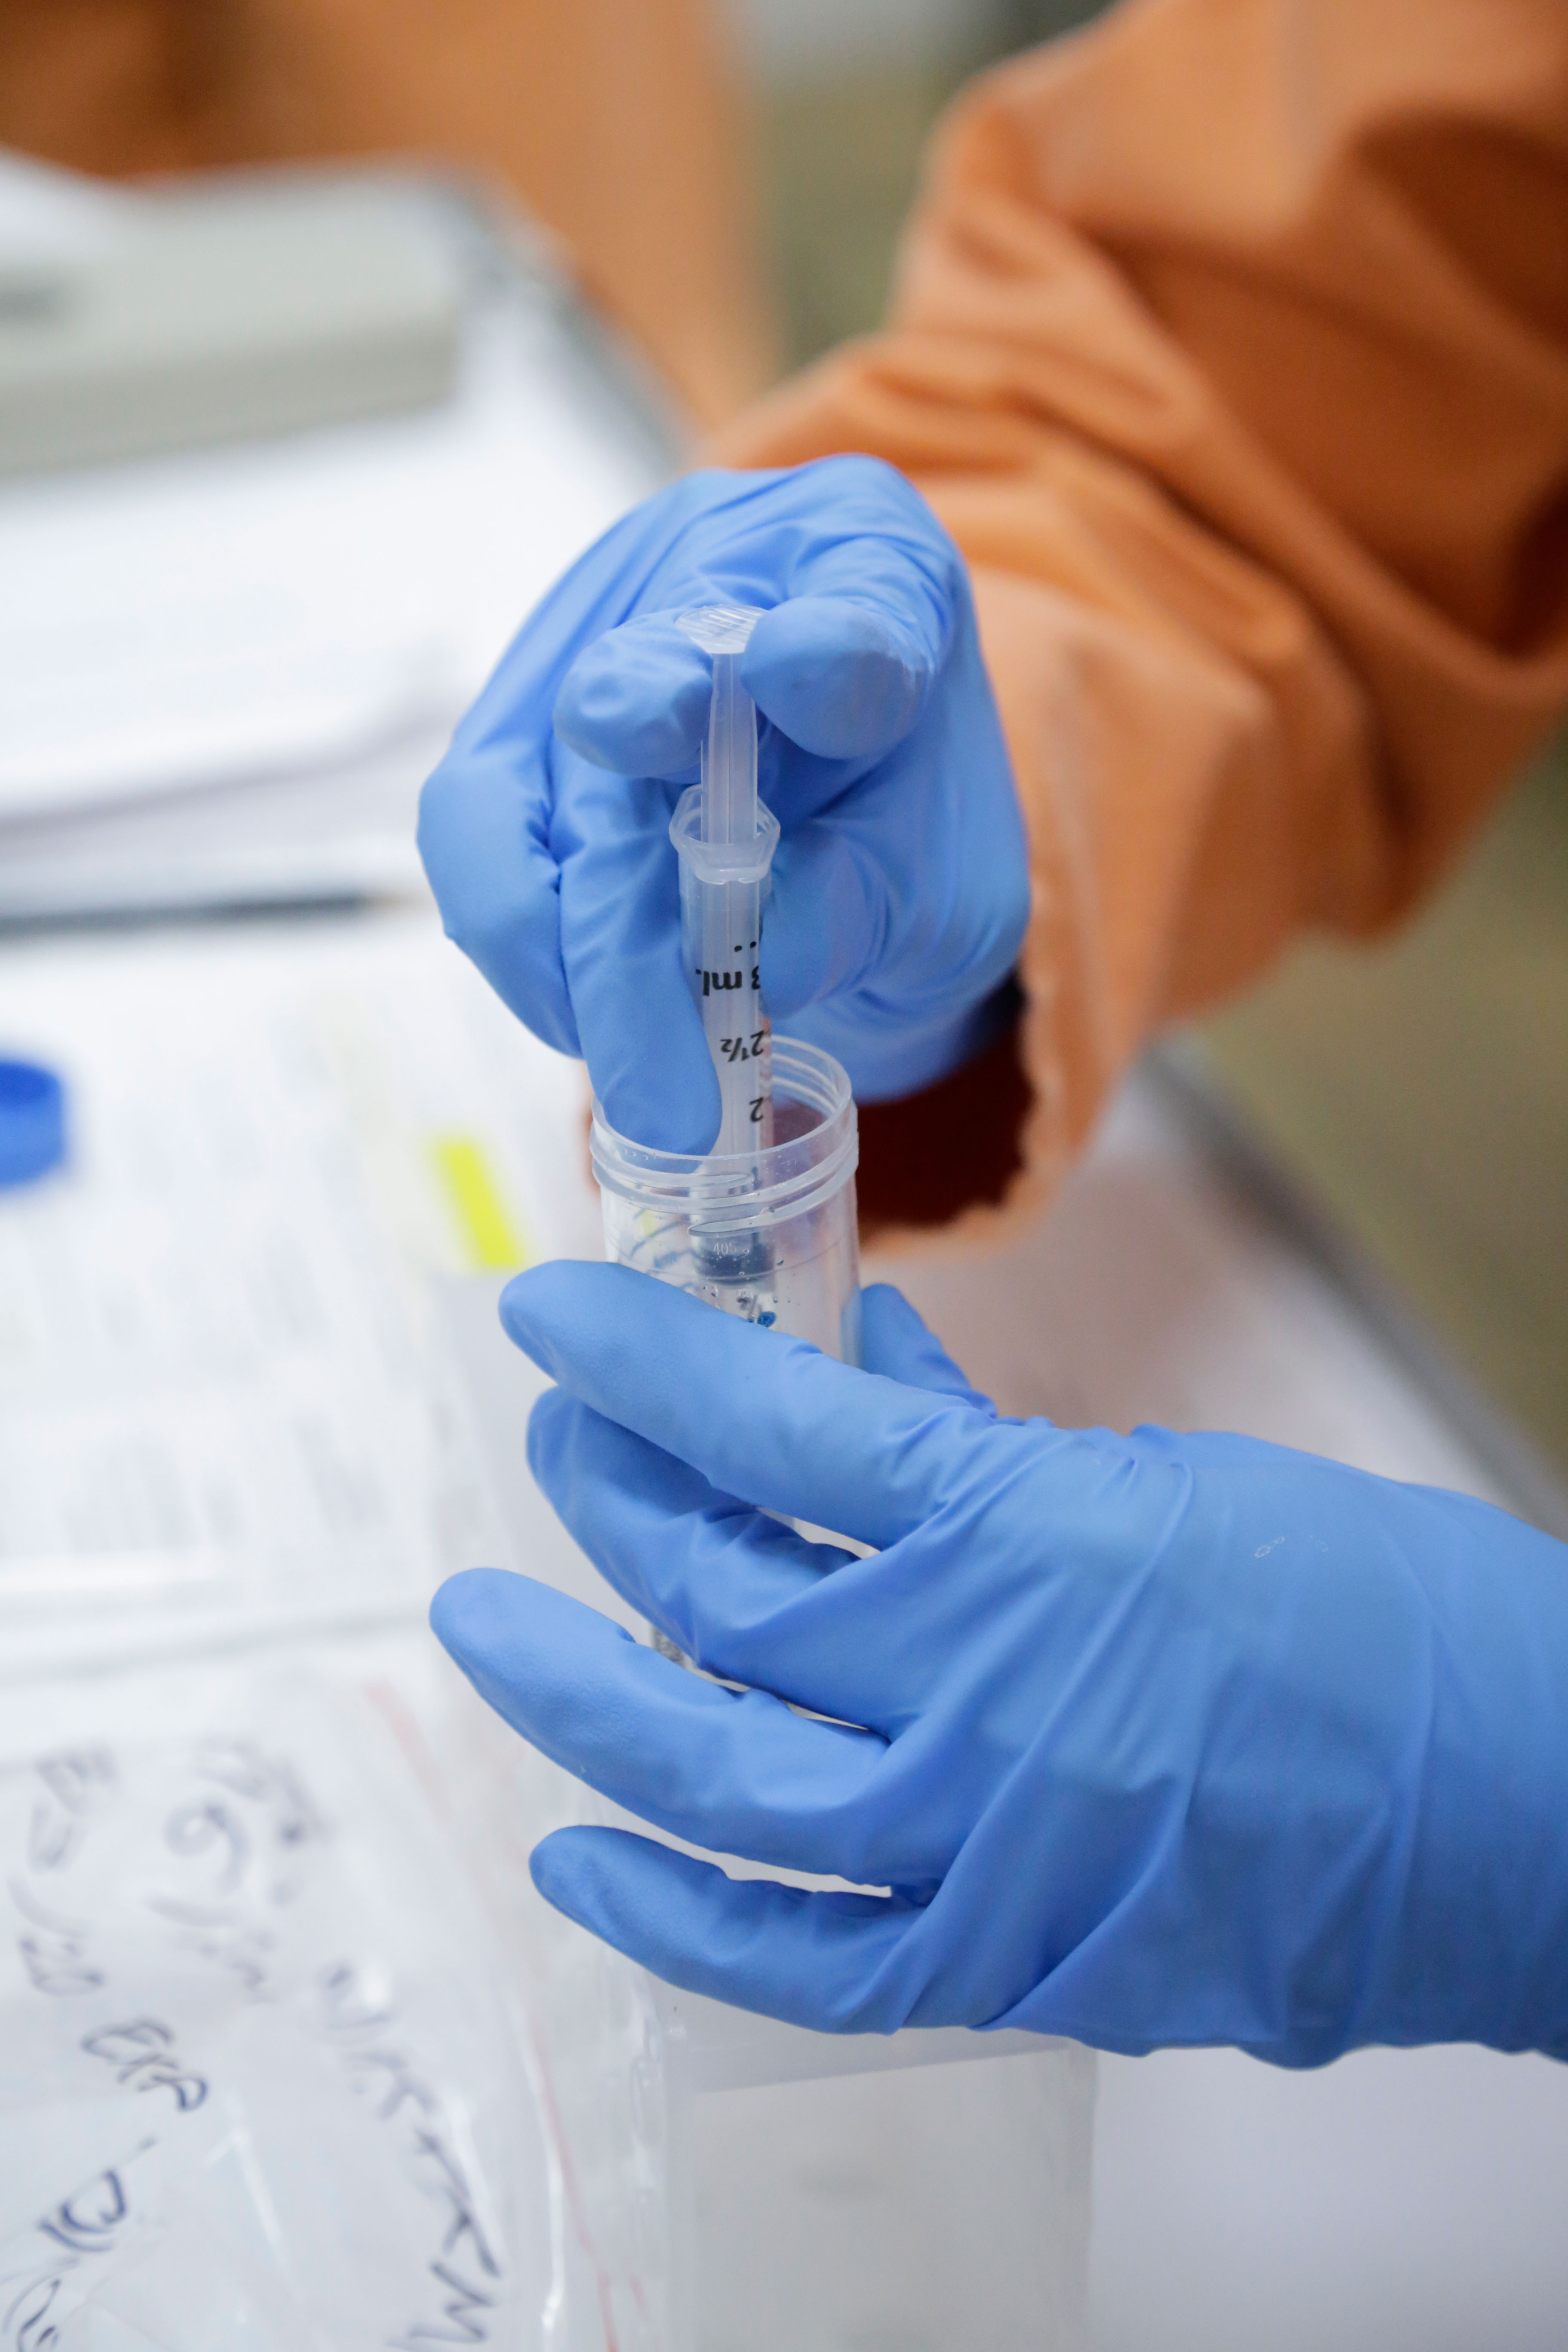 CSIRO begins testing Covid-19 vaccines - CSIRO